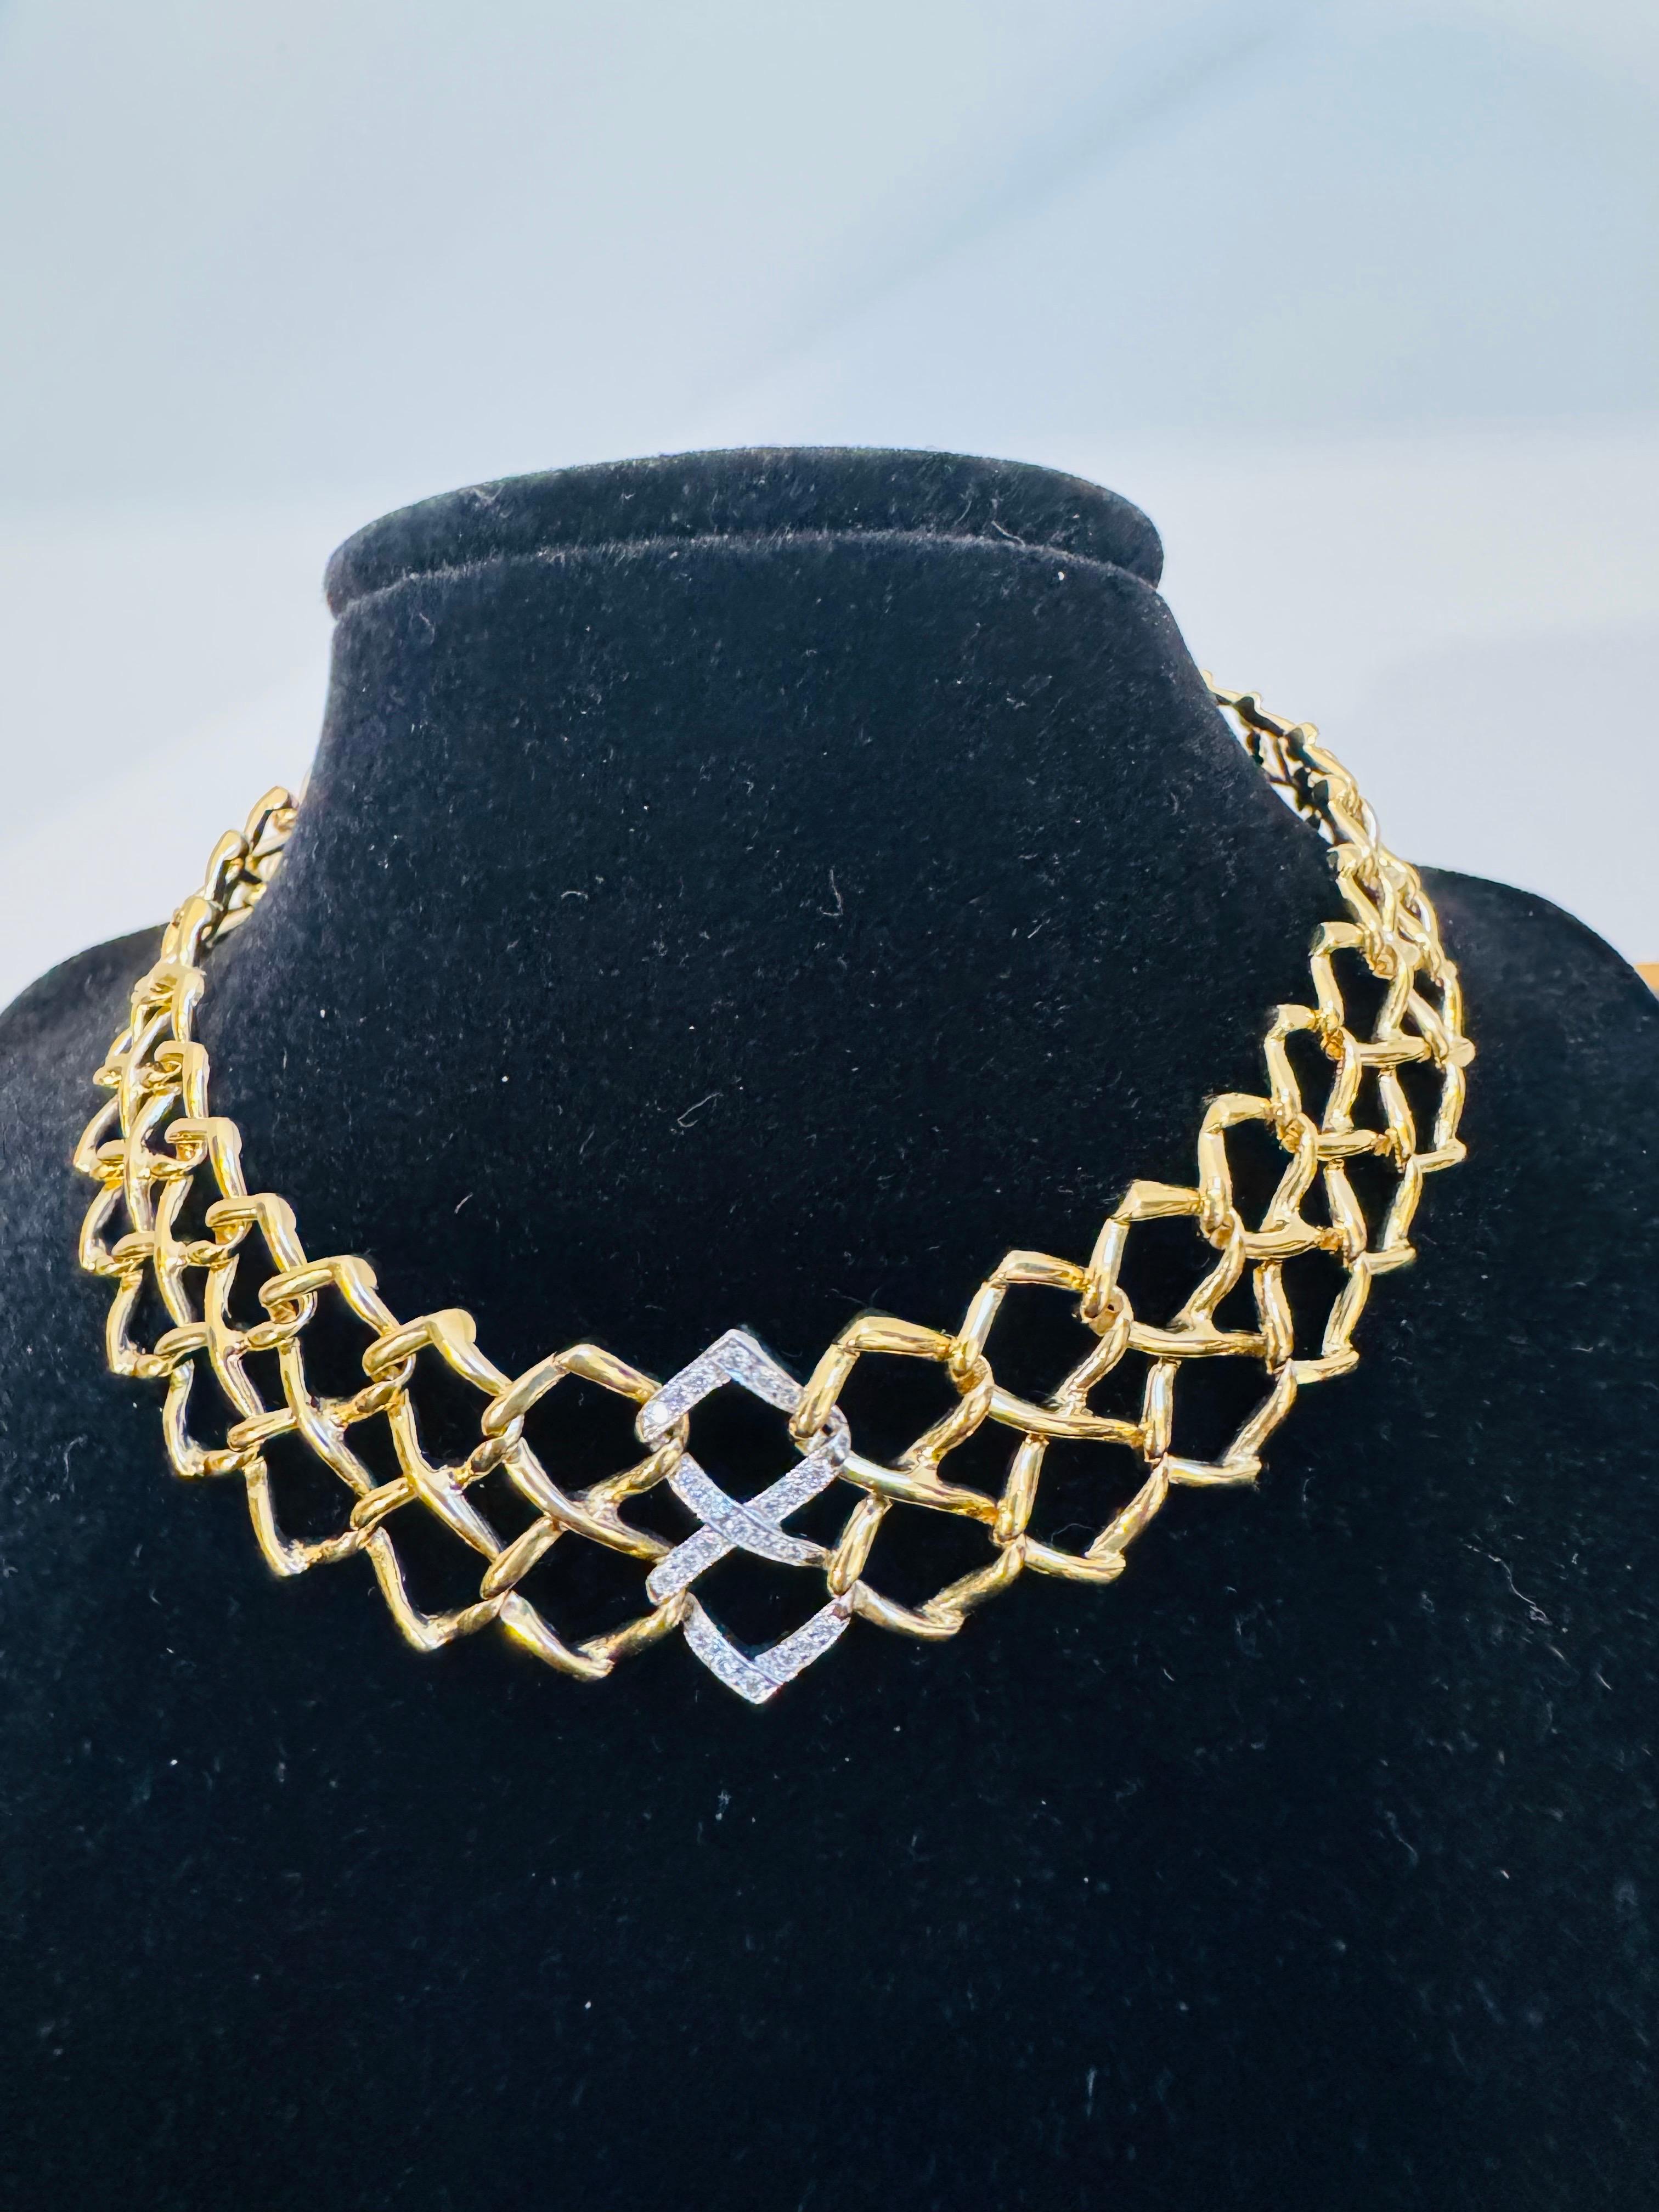 Tiffany & Co. Paloma Picasso Halsband aus Gelbgold und Platin mit Diamanten.
Es ist eine sehr schwere 18 Karat Gold 75,1 gm 
Seltene Vintage-Halskette von Tiffany & Co, entworfen von Paloma Picasso, gefertigt aus 18 Karat Gelbgold (um 1982).

Die